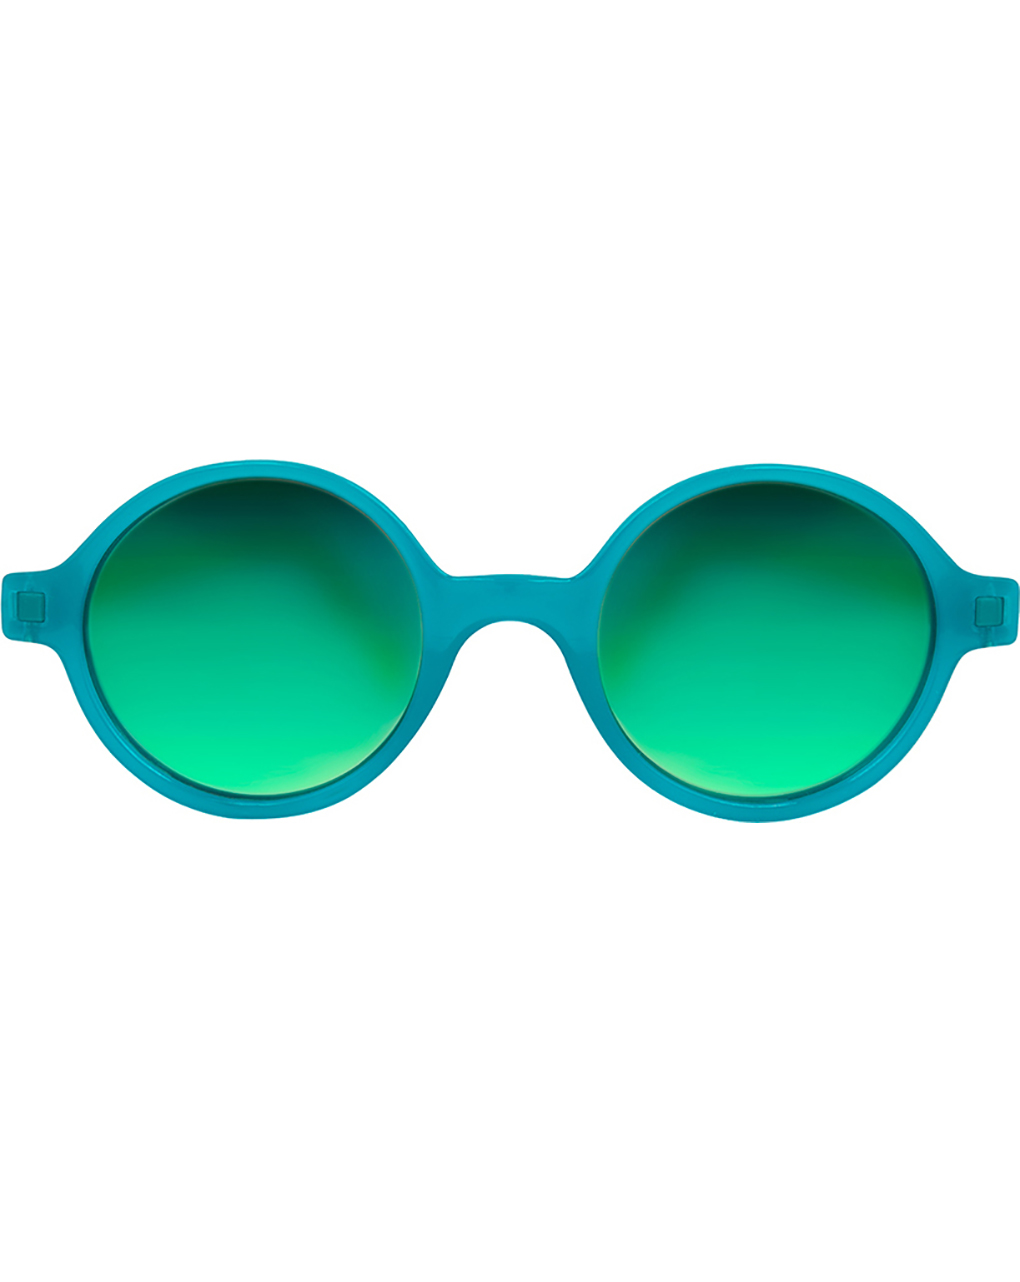 Ki et la peacock green παιδικά γυαλιά ηλίου 4-6 ετών - kietla